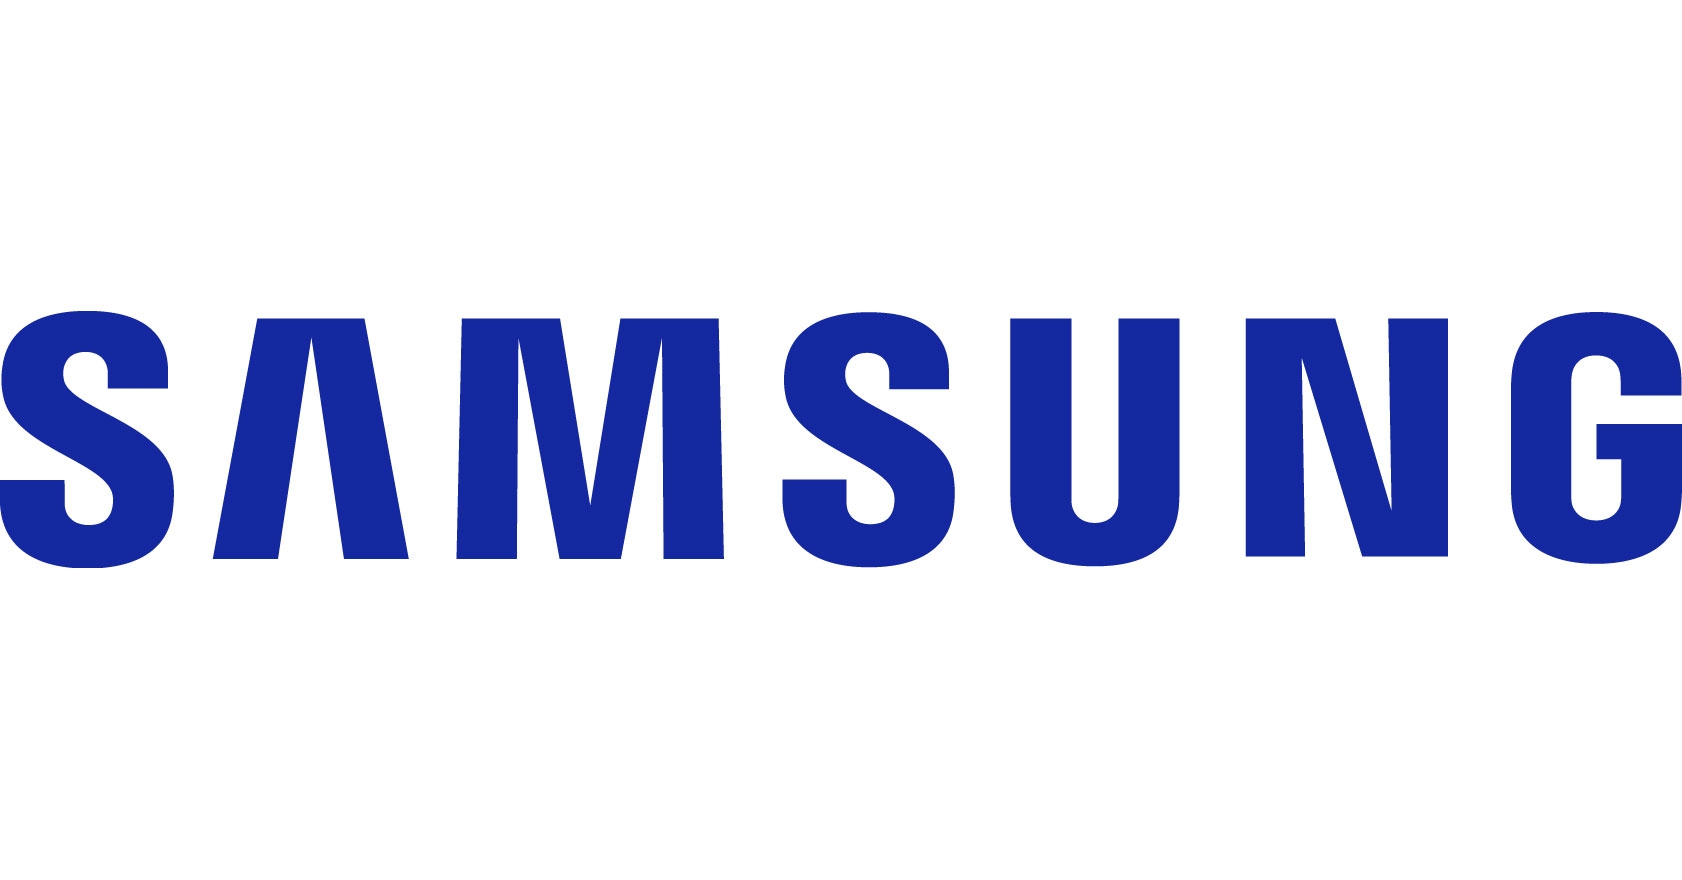 Samsung Galaxy Tab S7 128 GB Wifi 11Inch For $325 With EDU/EPP Discount $324.98